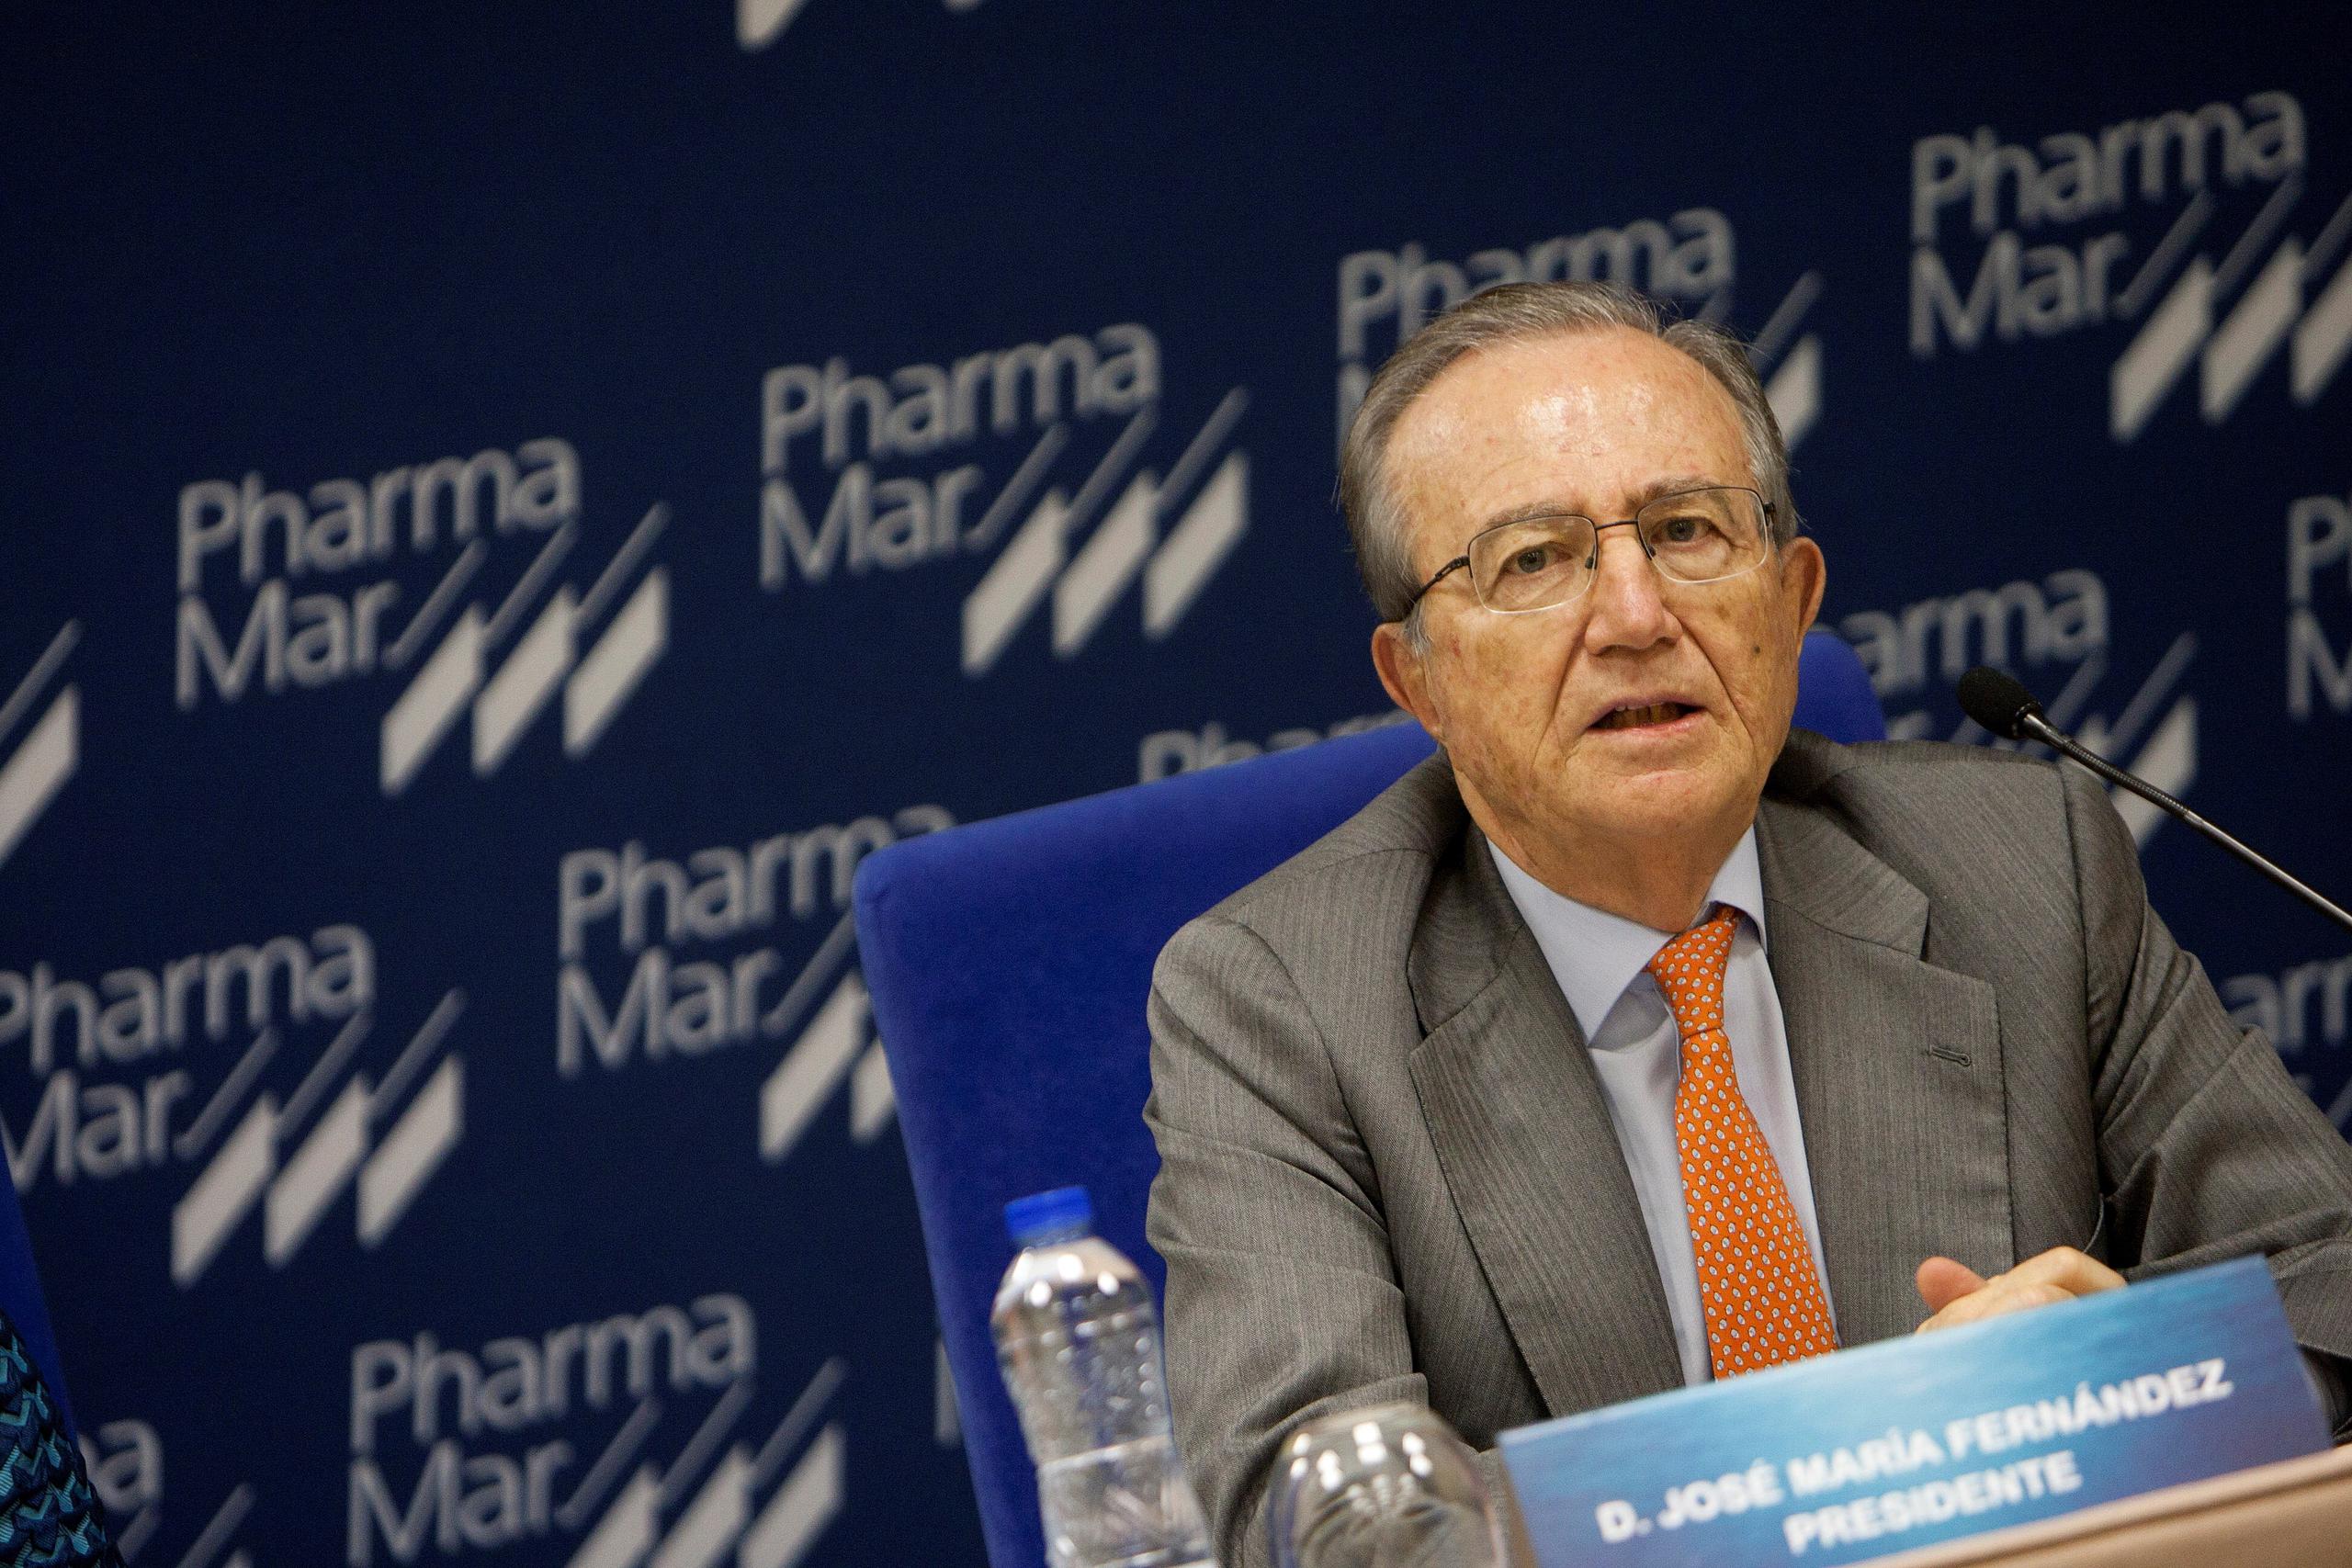 PharmaMar podría llegar a distribuir kits en 30 países, según ha destacado el presidente de PhamarMar. En la foto el presidente de Pharmamar José Mª Fernandez de Sousa.